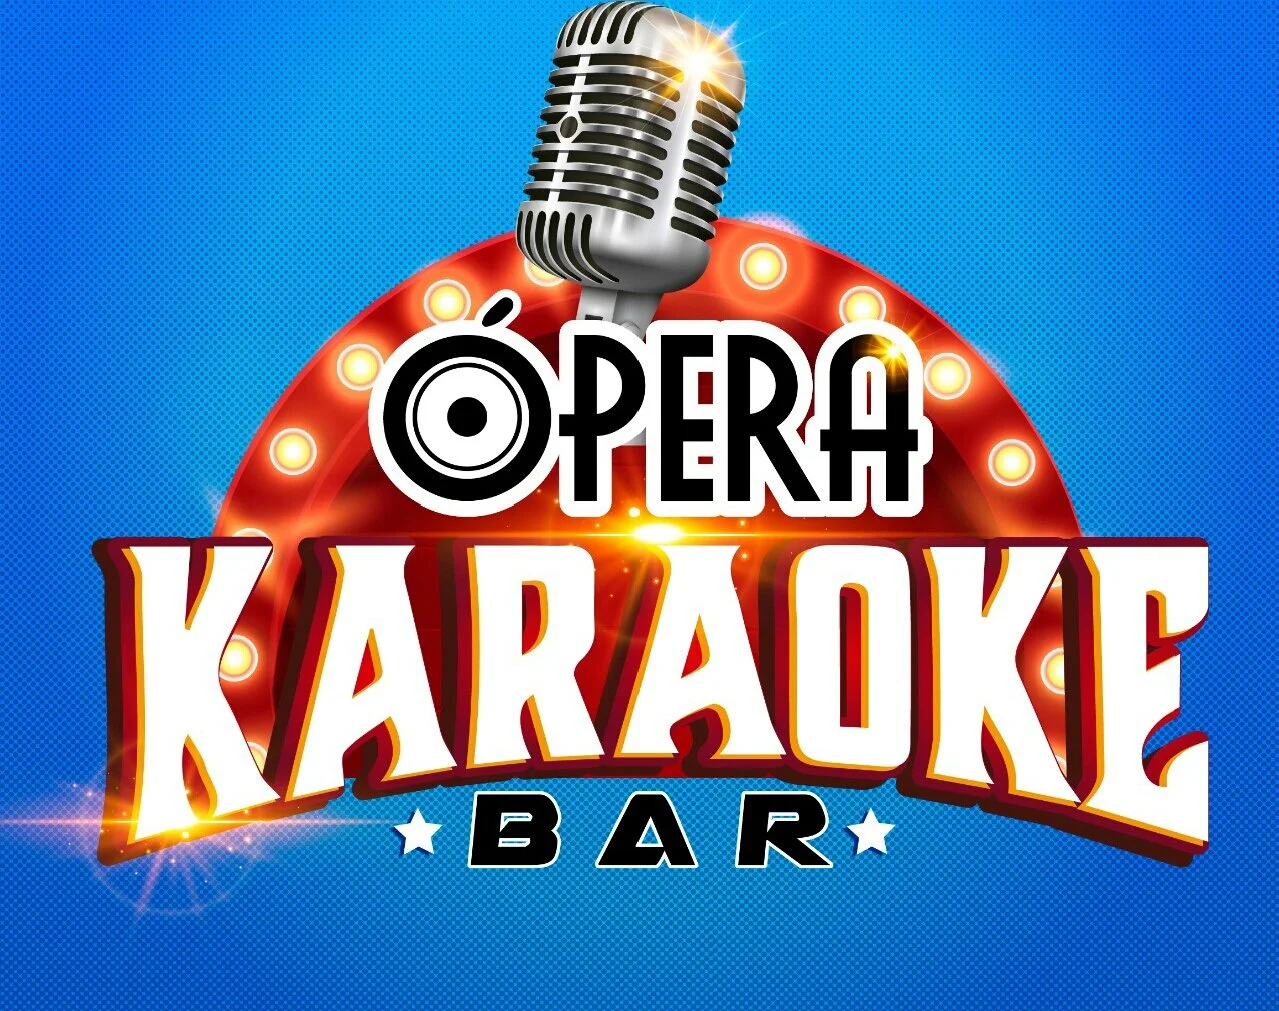 Ópera Karaoke Bar-10460